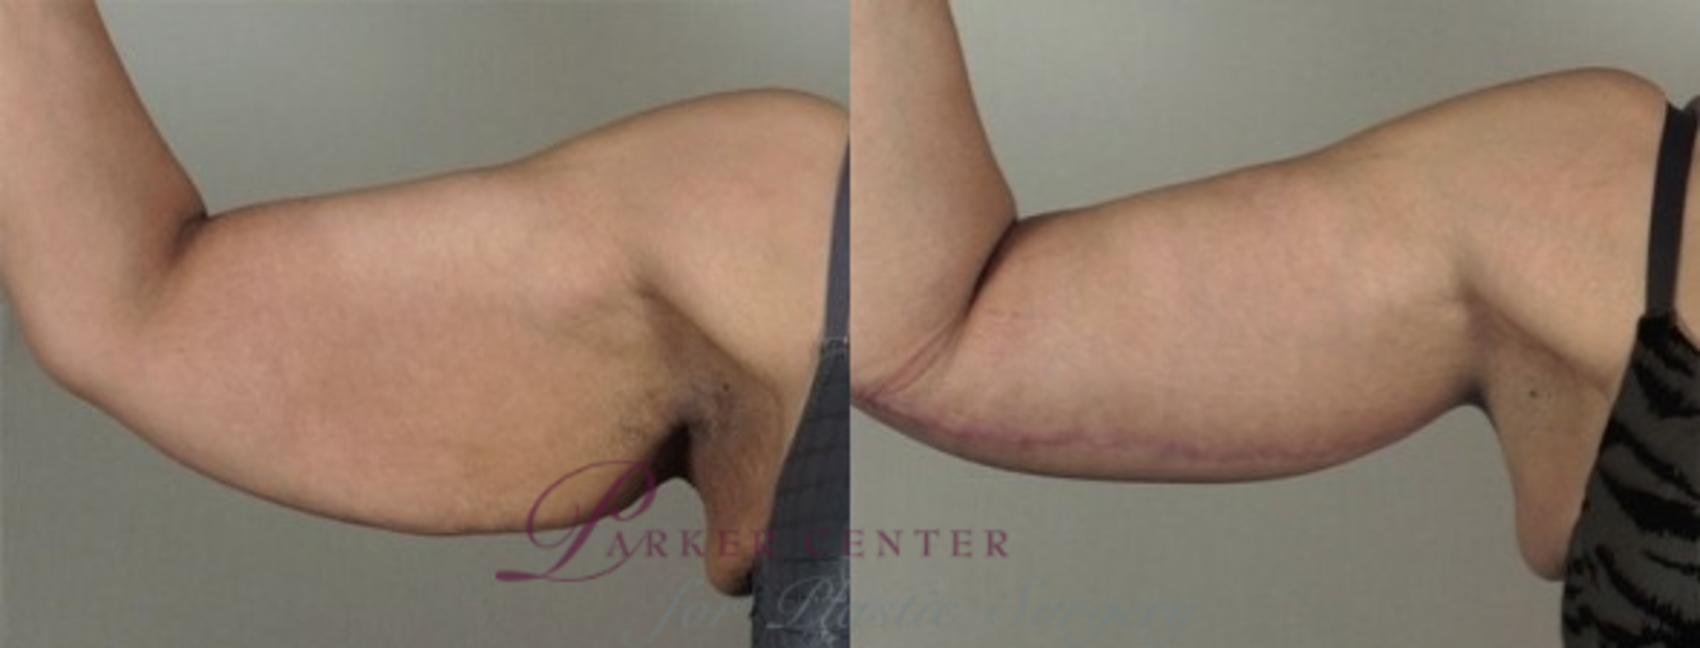 Upper Arm Rejuvenation Case 934 Before & After View #5 | Paramus, NJ | Parker Center for Plastic Surgery